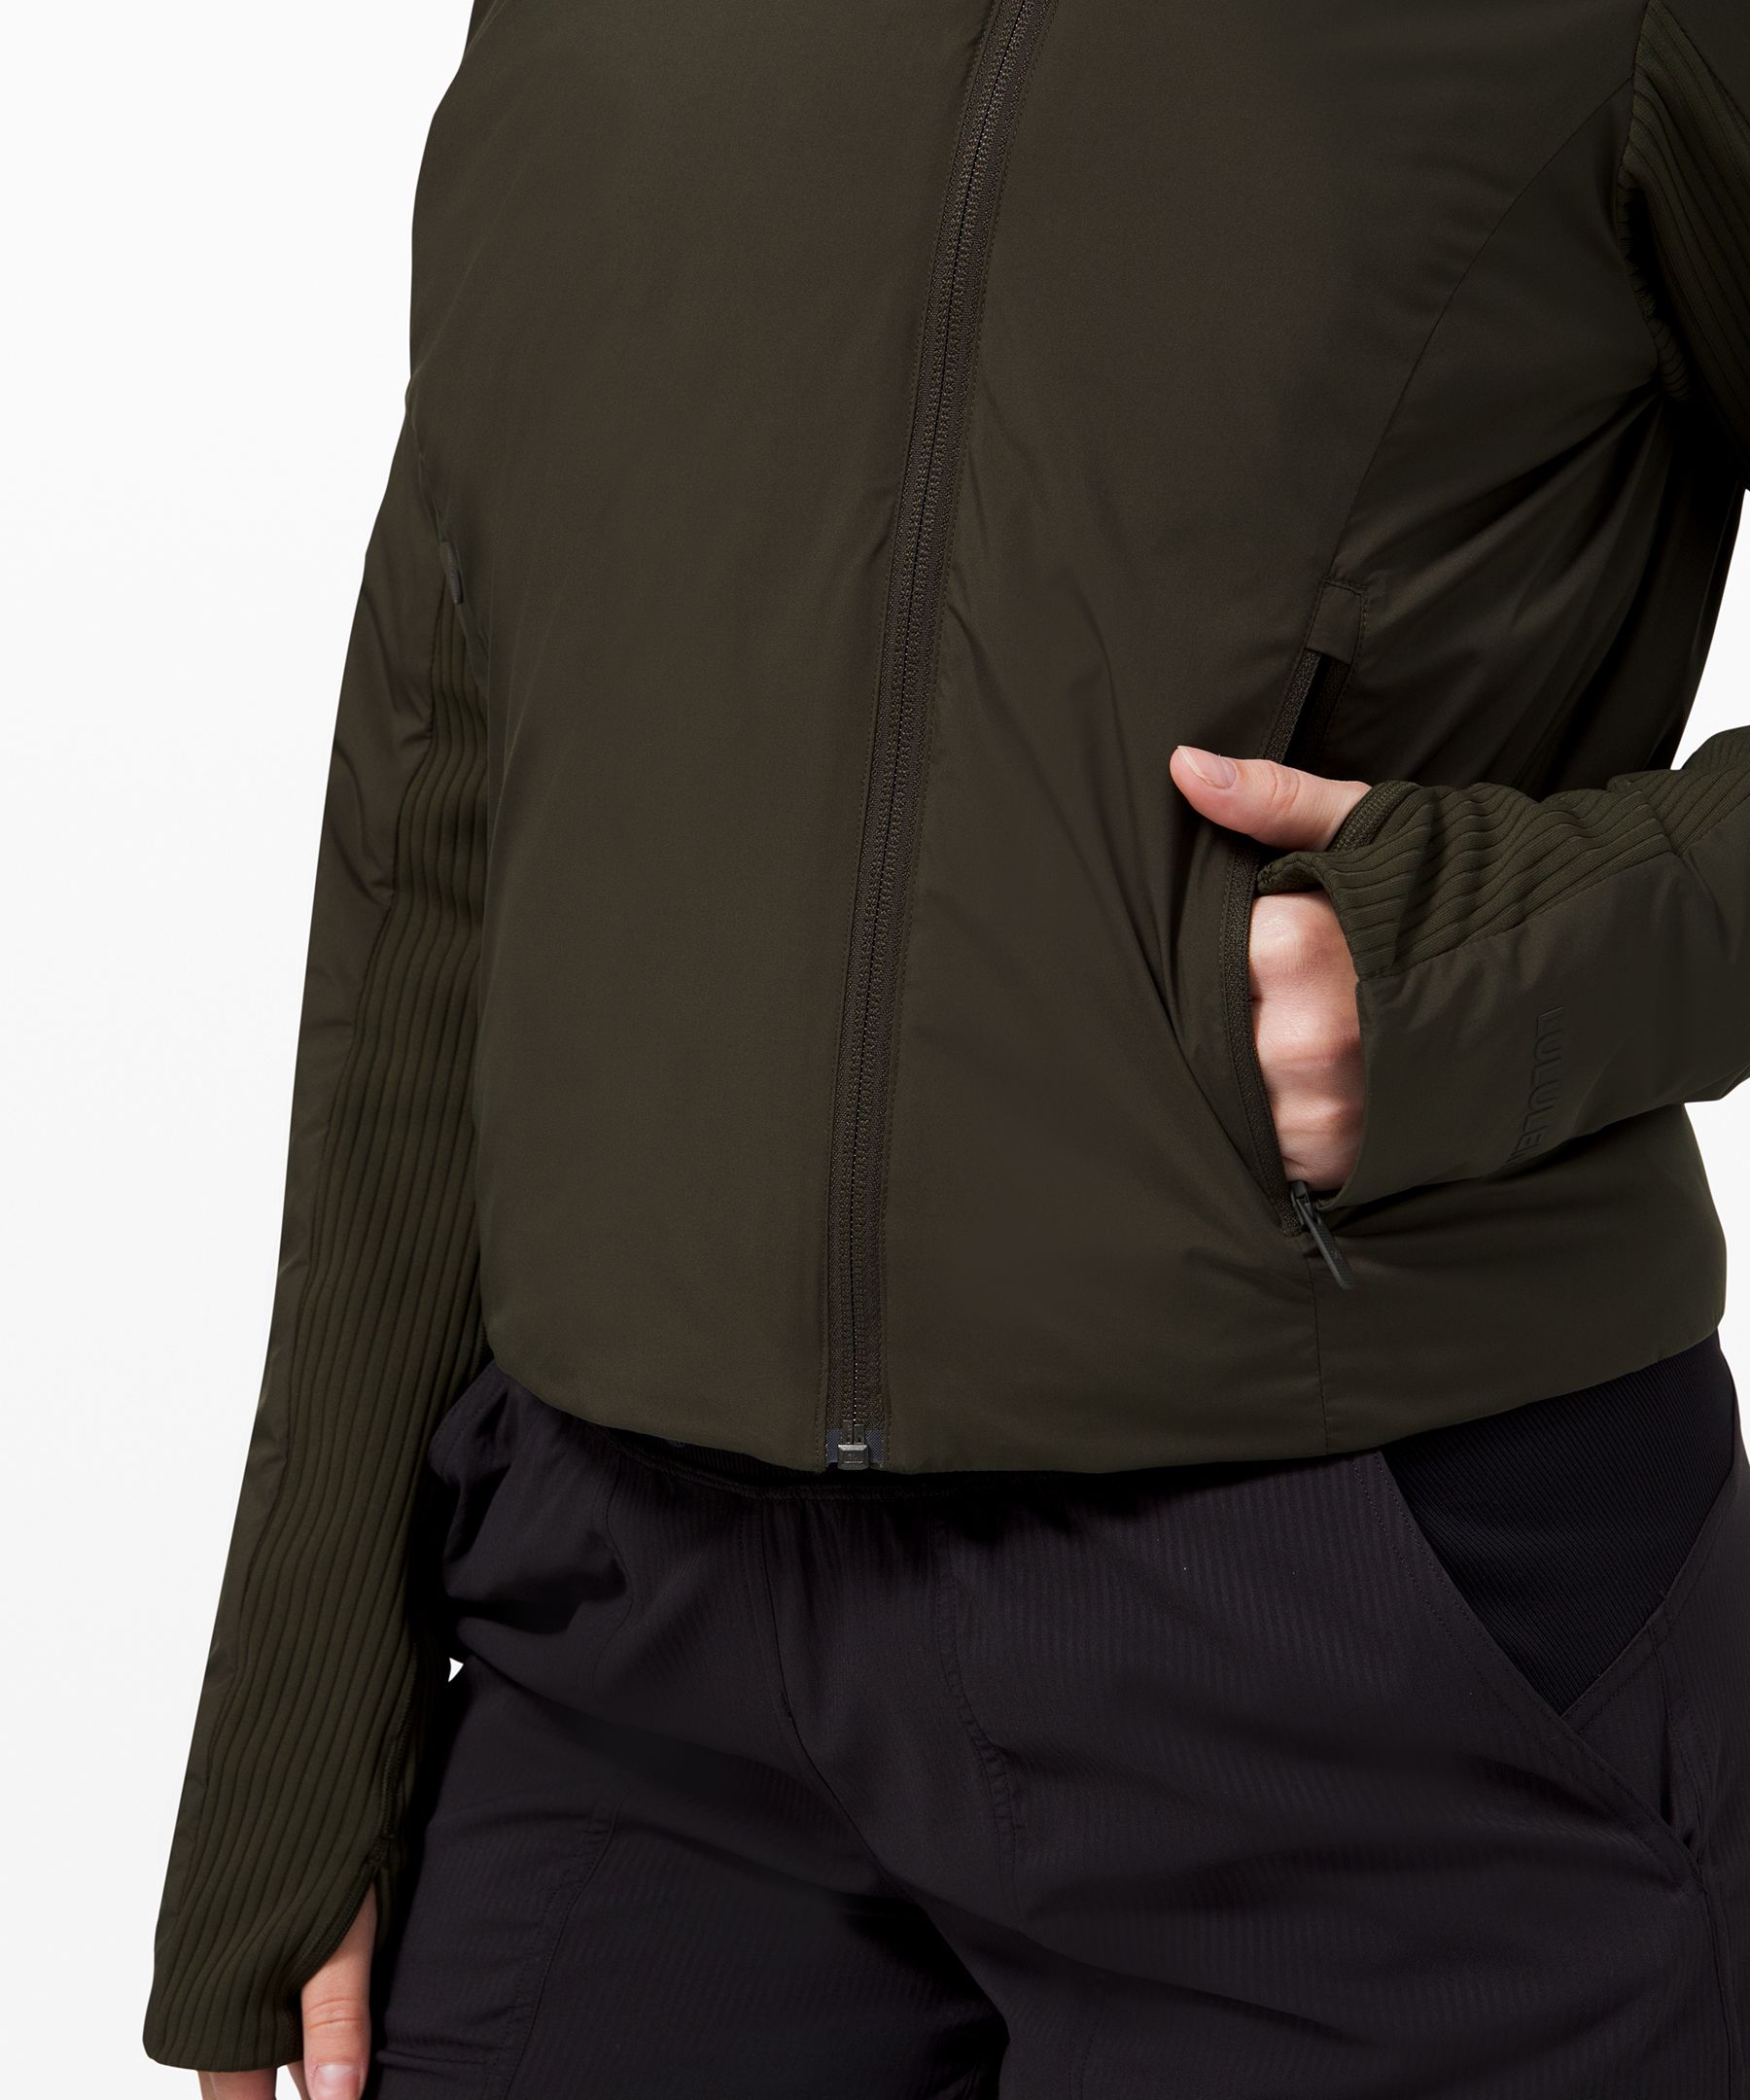 lululemon sleek essentials jacket